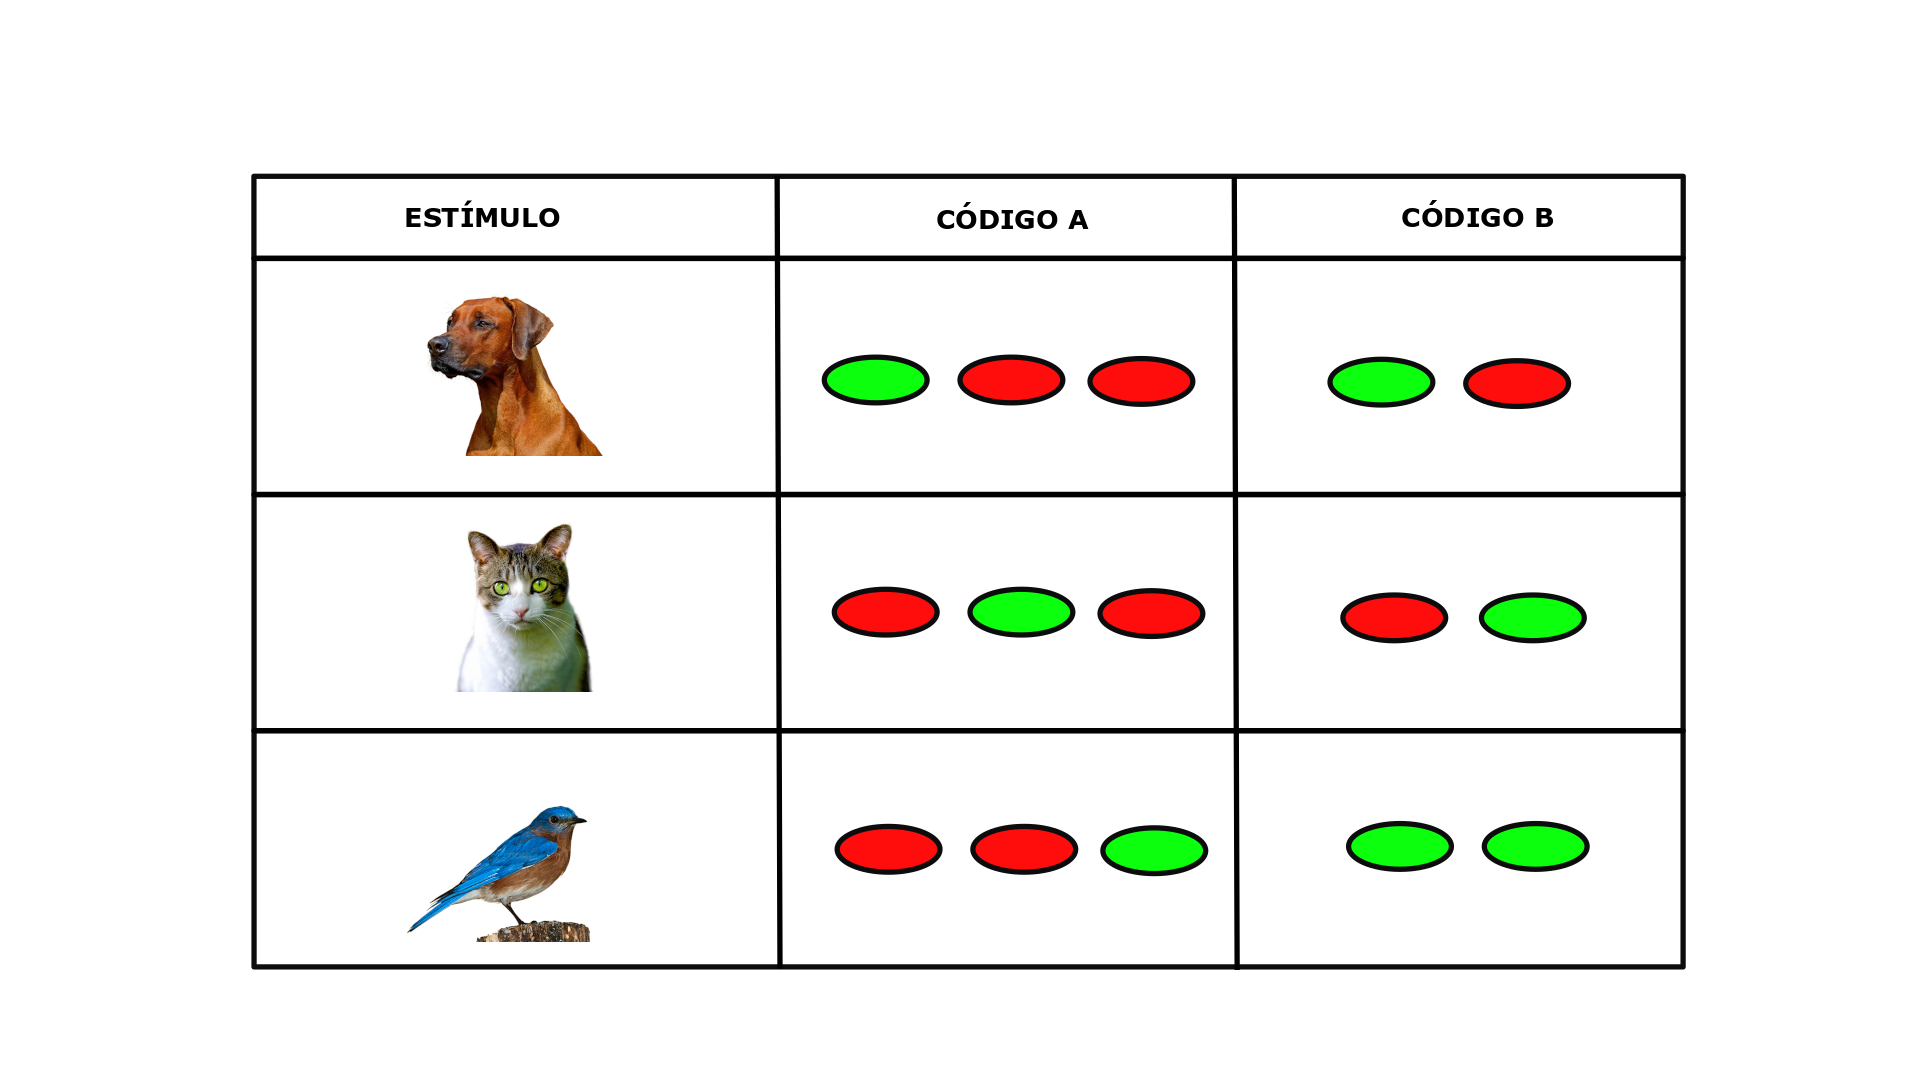 Ilustración de dos códigos neuronales distintos para representar distintos estímulos. Fuente: Universidad Isabel I.